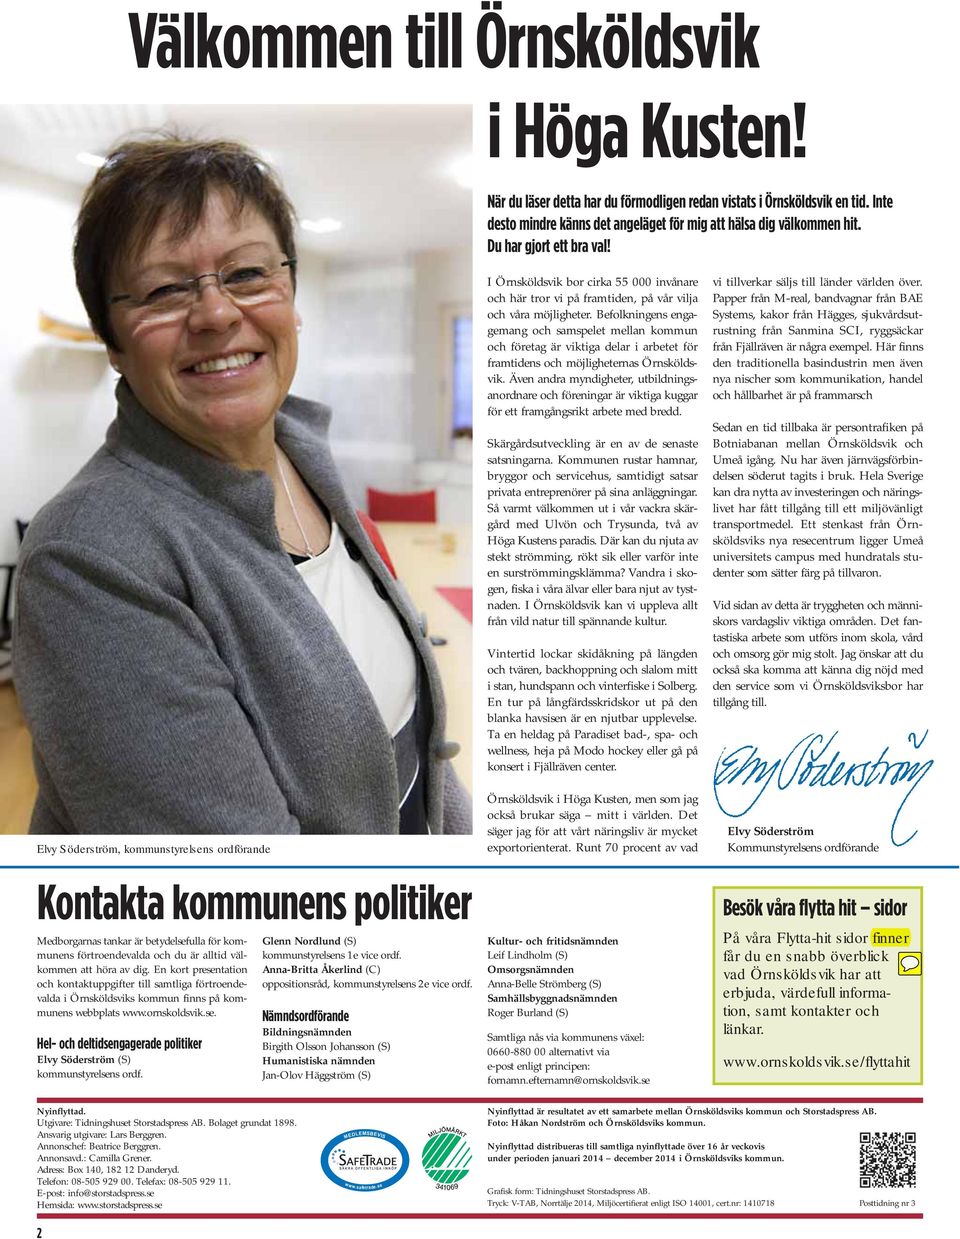 Befolkningens engagemang och samspelet mellan kommun och företag är viktiga delar i arbetet för framtidens och möjligheternas Örnsköldsvik.